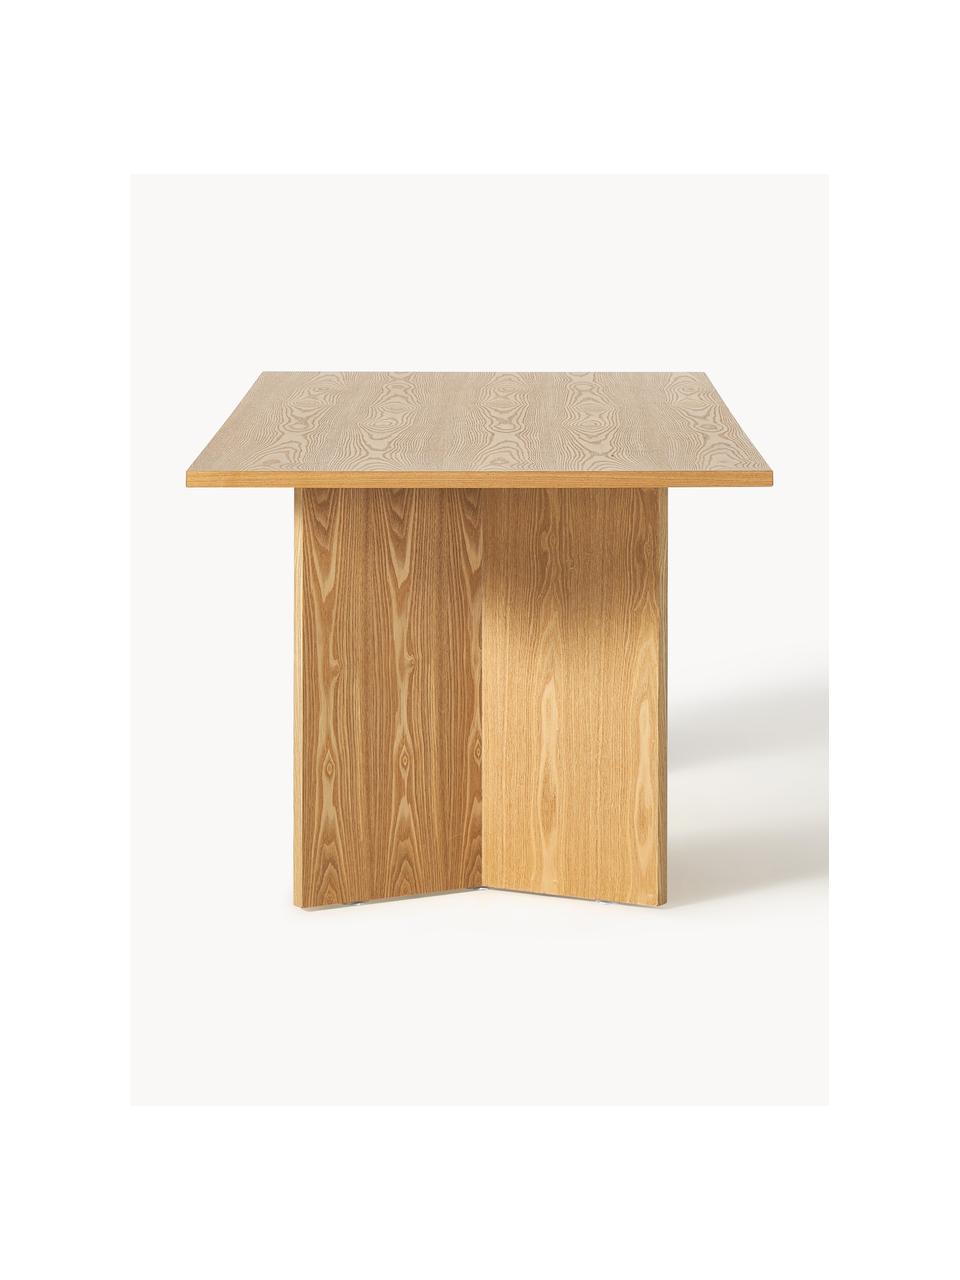 Tavolo in legno Toni, 200 x 90 cm, Pannello MDF (fibra a media densità) con finitura in legno di quercia laccato, certificato FSC, Legno di frassino, Larg. 200 x Prof. 90 cm